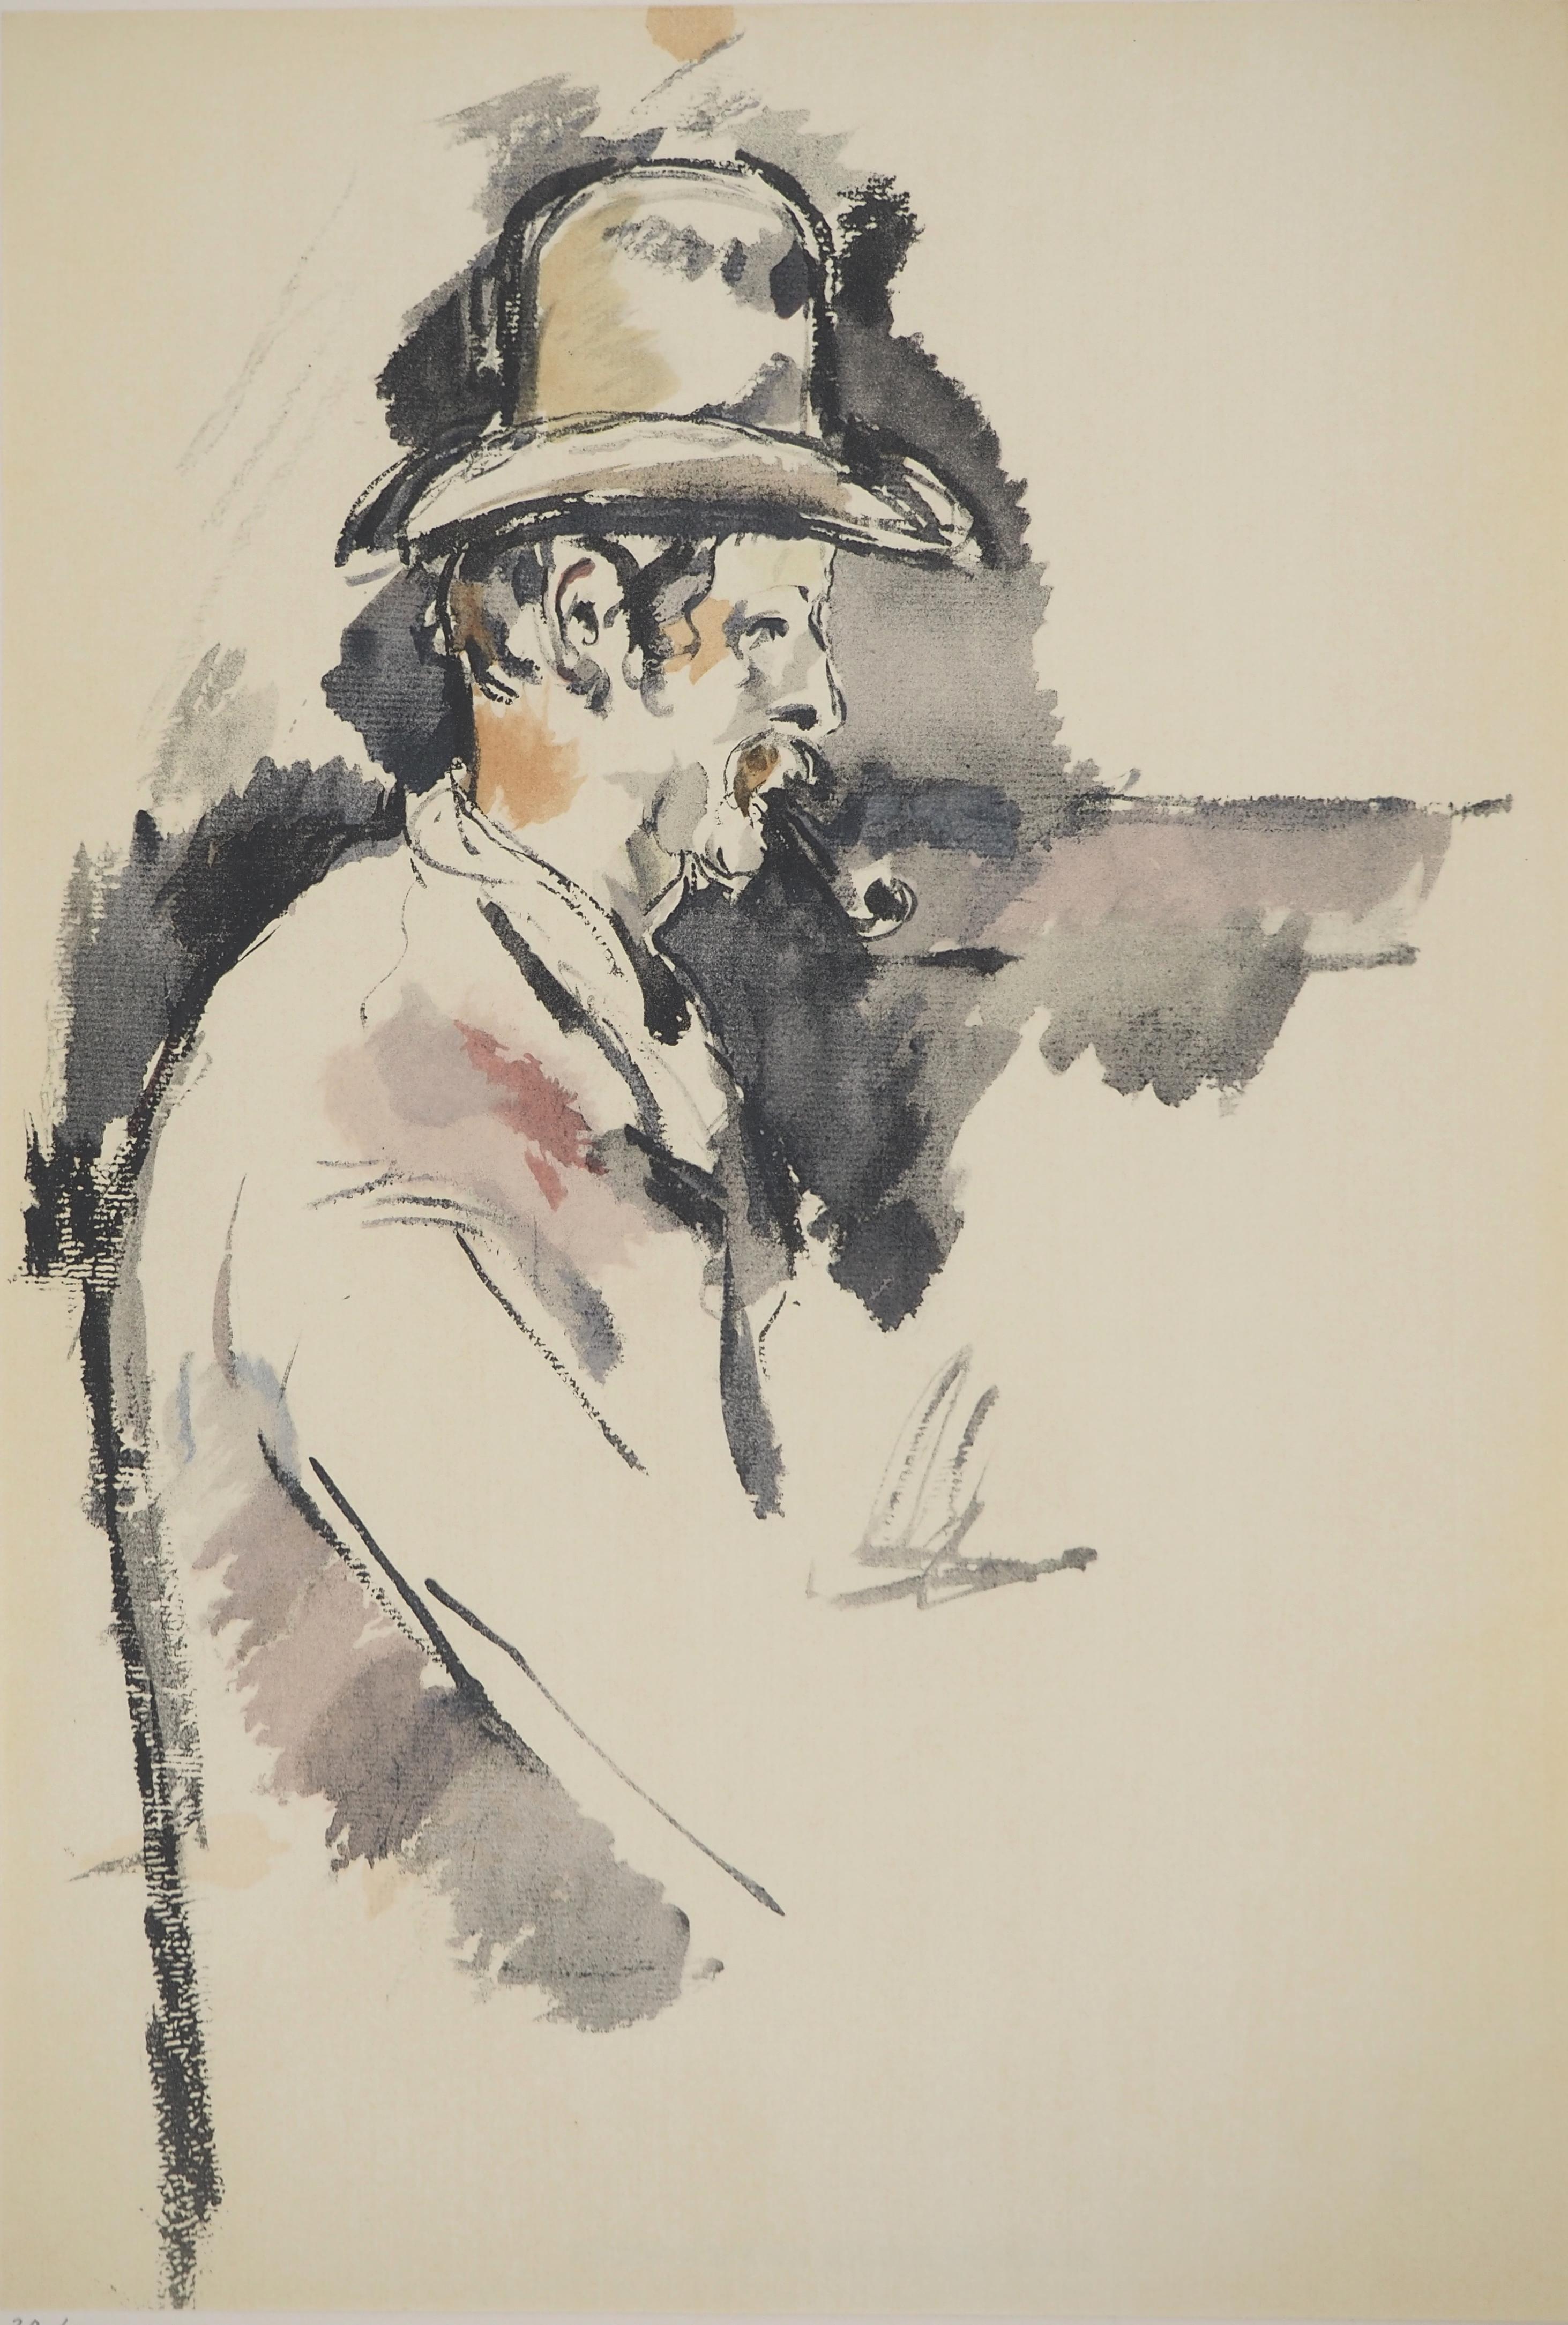 Le joueur de cartes - Lithographie, 1971 - Print de Paul Cézanne